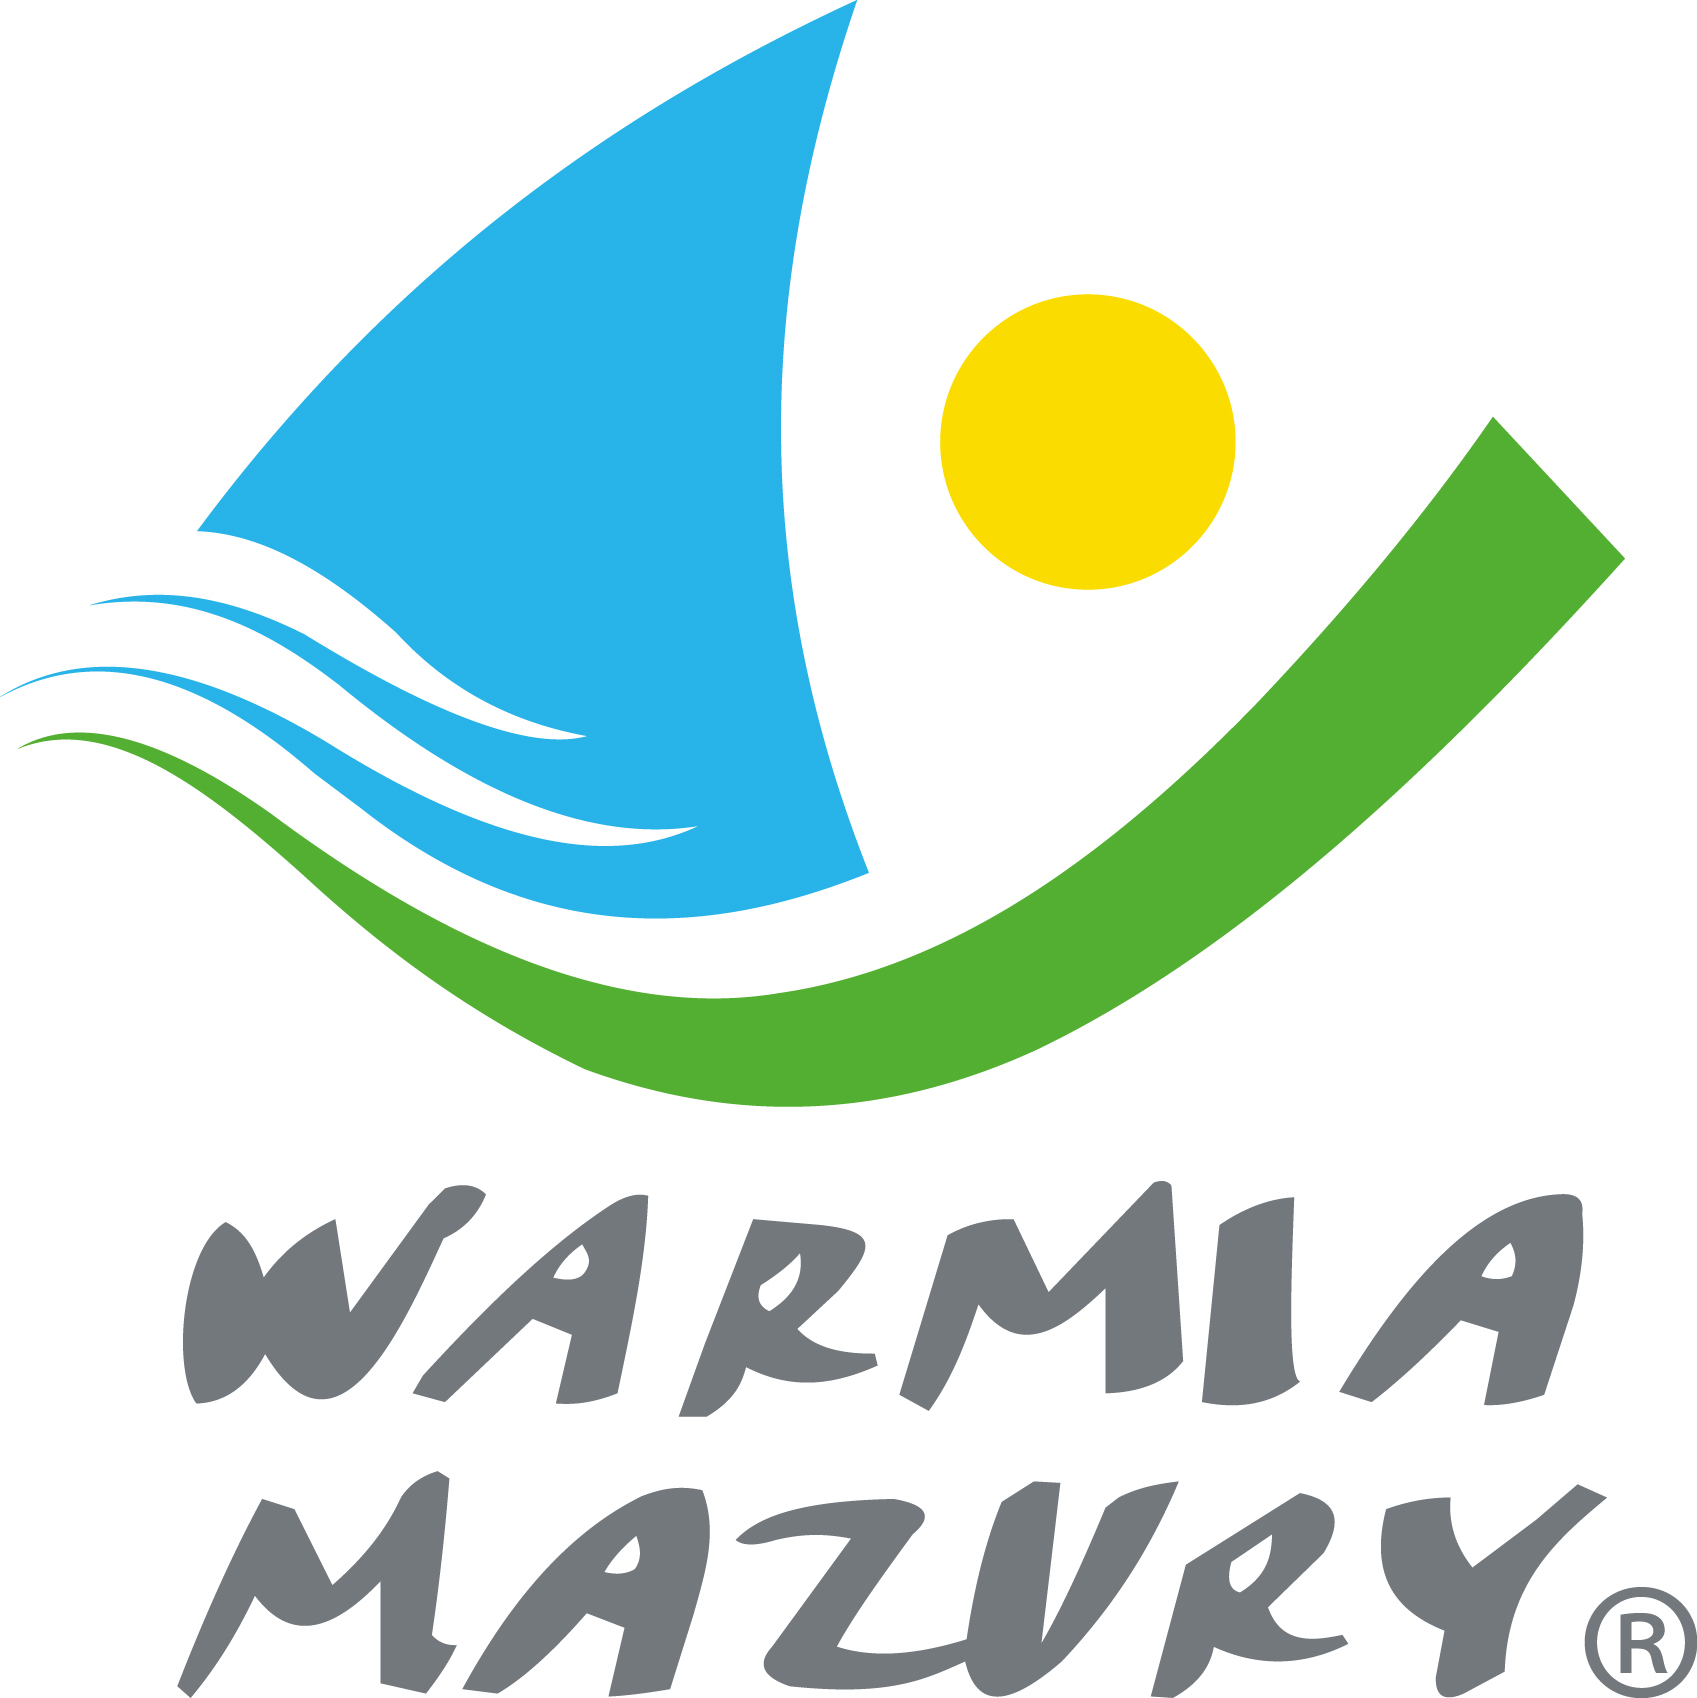 warmia mazury logo rgb